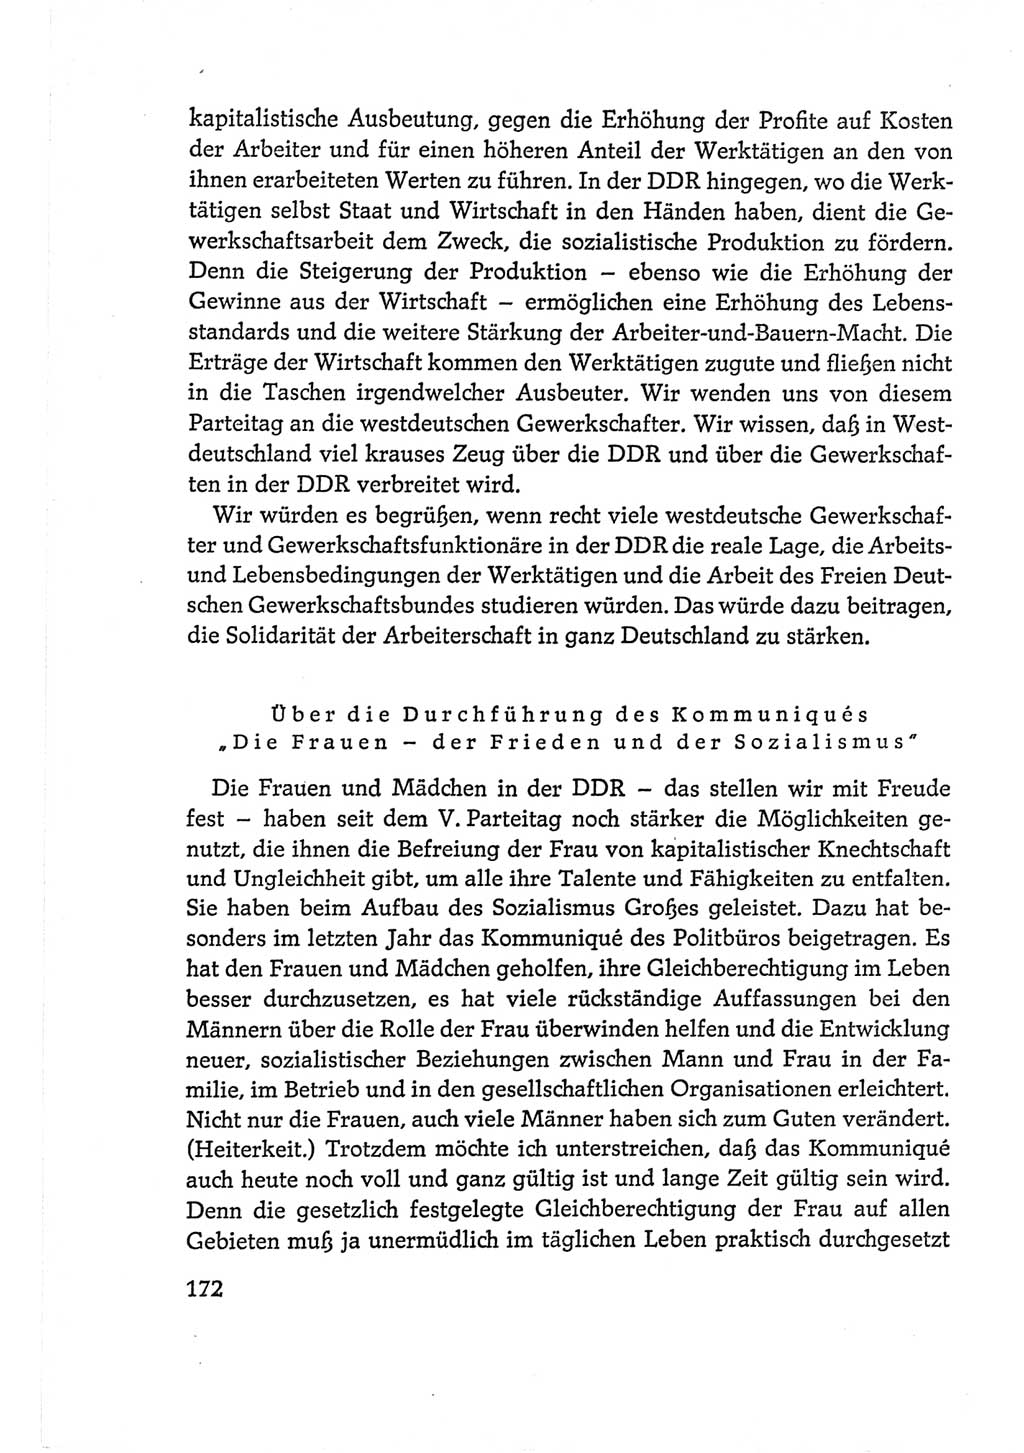 Protokoll der Verhandlungen des Ⅵ. Parteitages der Sozialistischen Einheitspartei Deutschlands (SED) [Deutsche Demokratische Republik (DDR)] 1963, Band Ⅰ, Seite 172 (Prot. Verh. Ⅵ. PT SED DDR 1963, Bd. Ⅰ, S. 172)